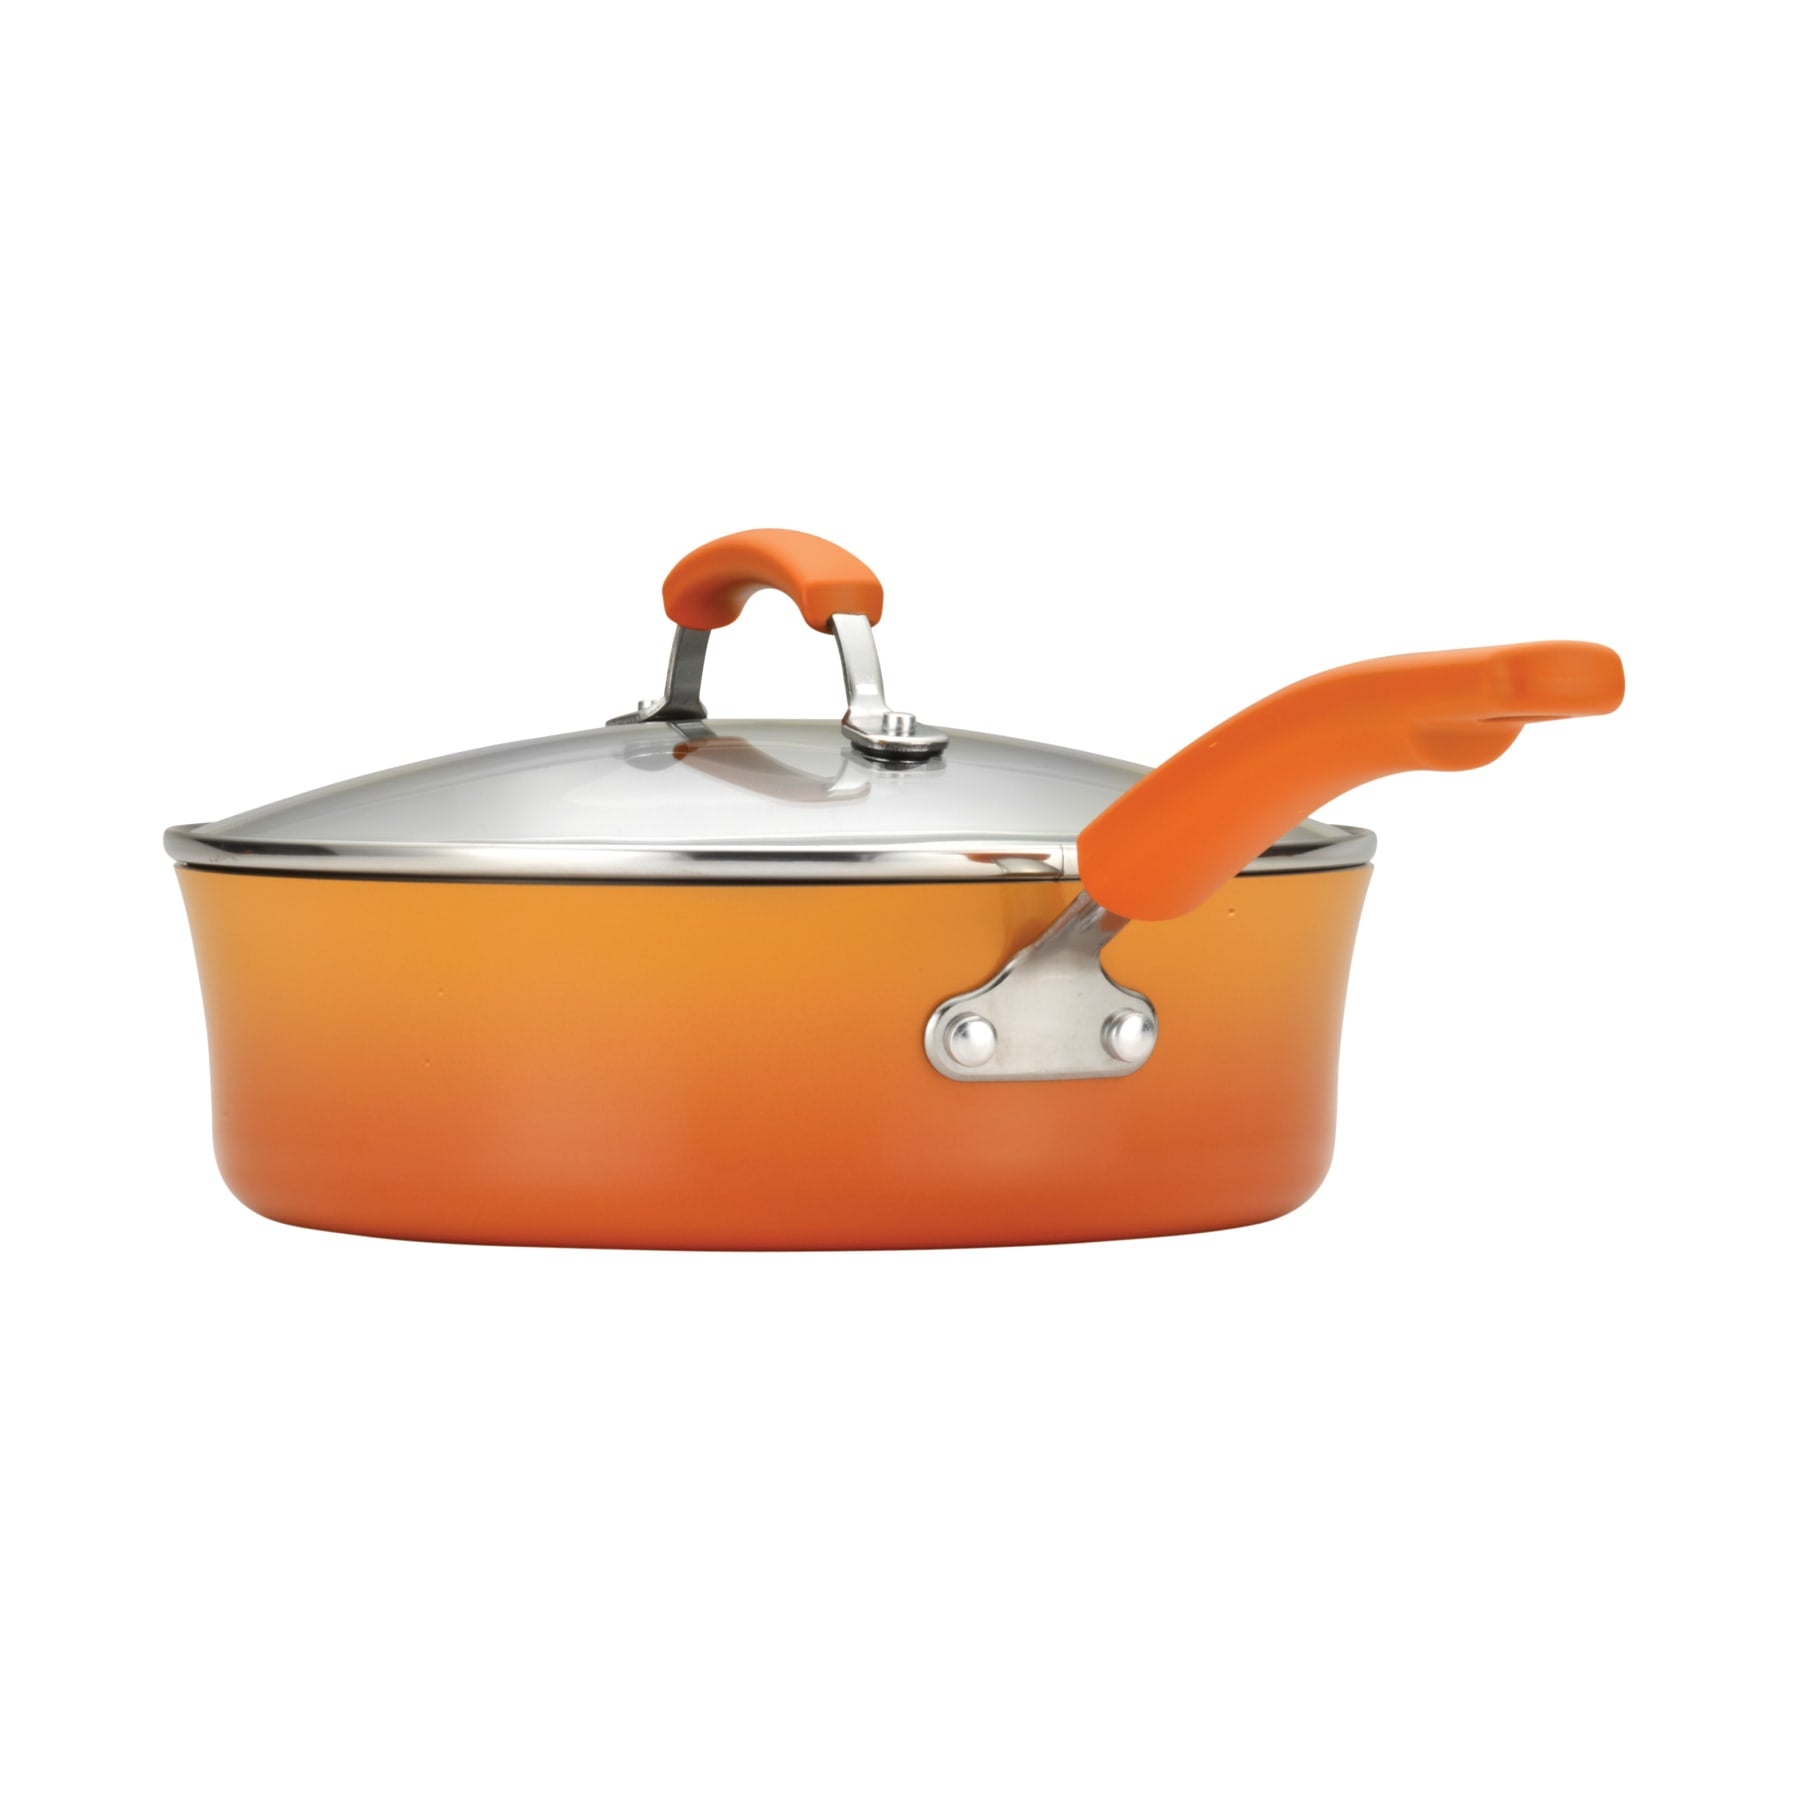 Rachael Ray 14-Piece Cookware Set Orange 17627 - Best Buy